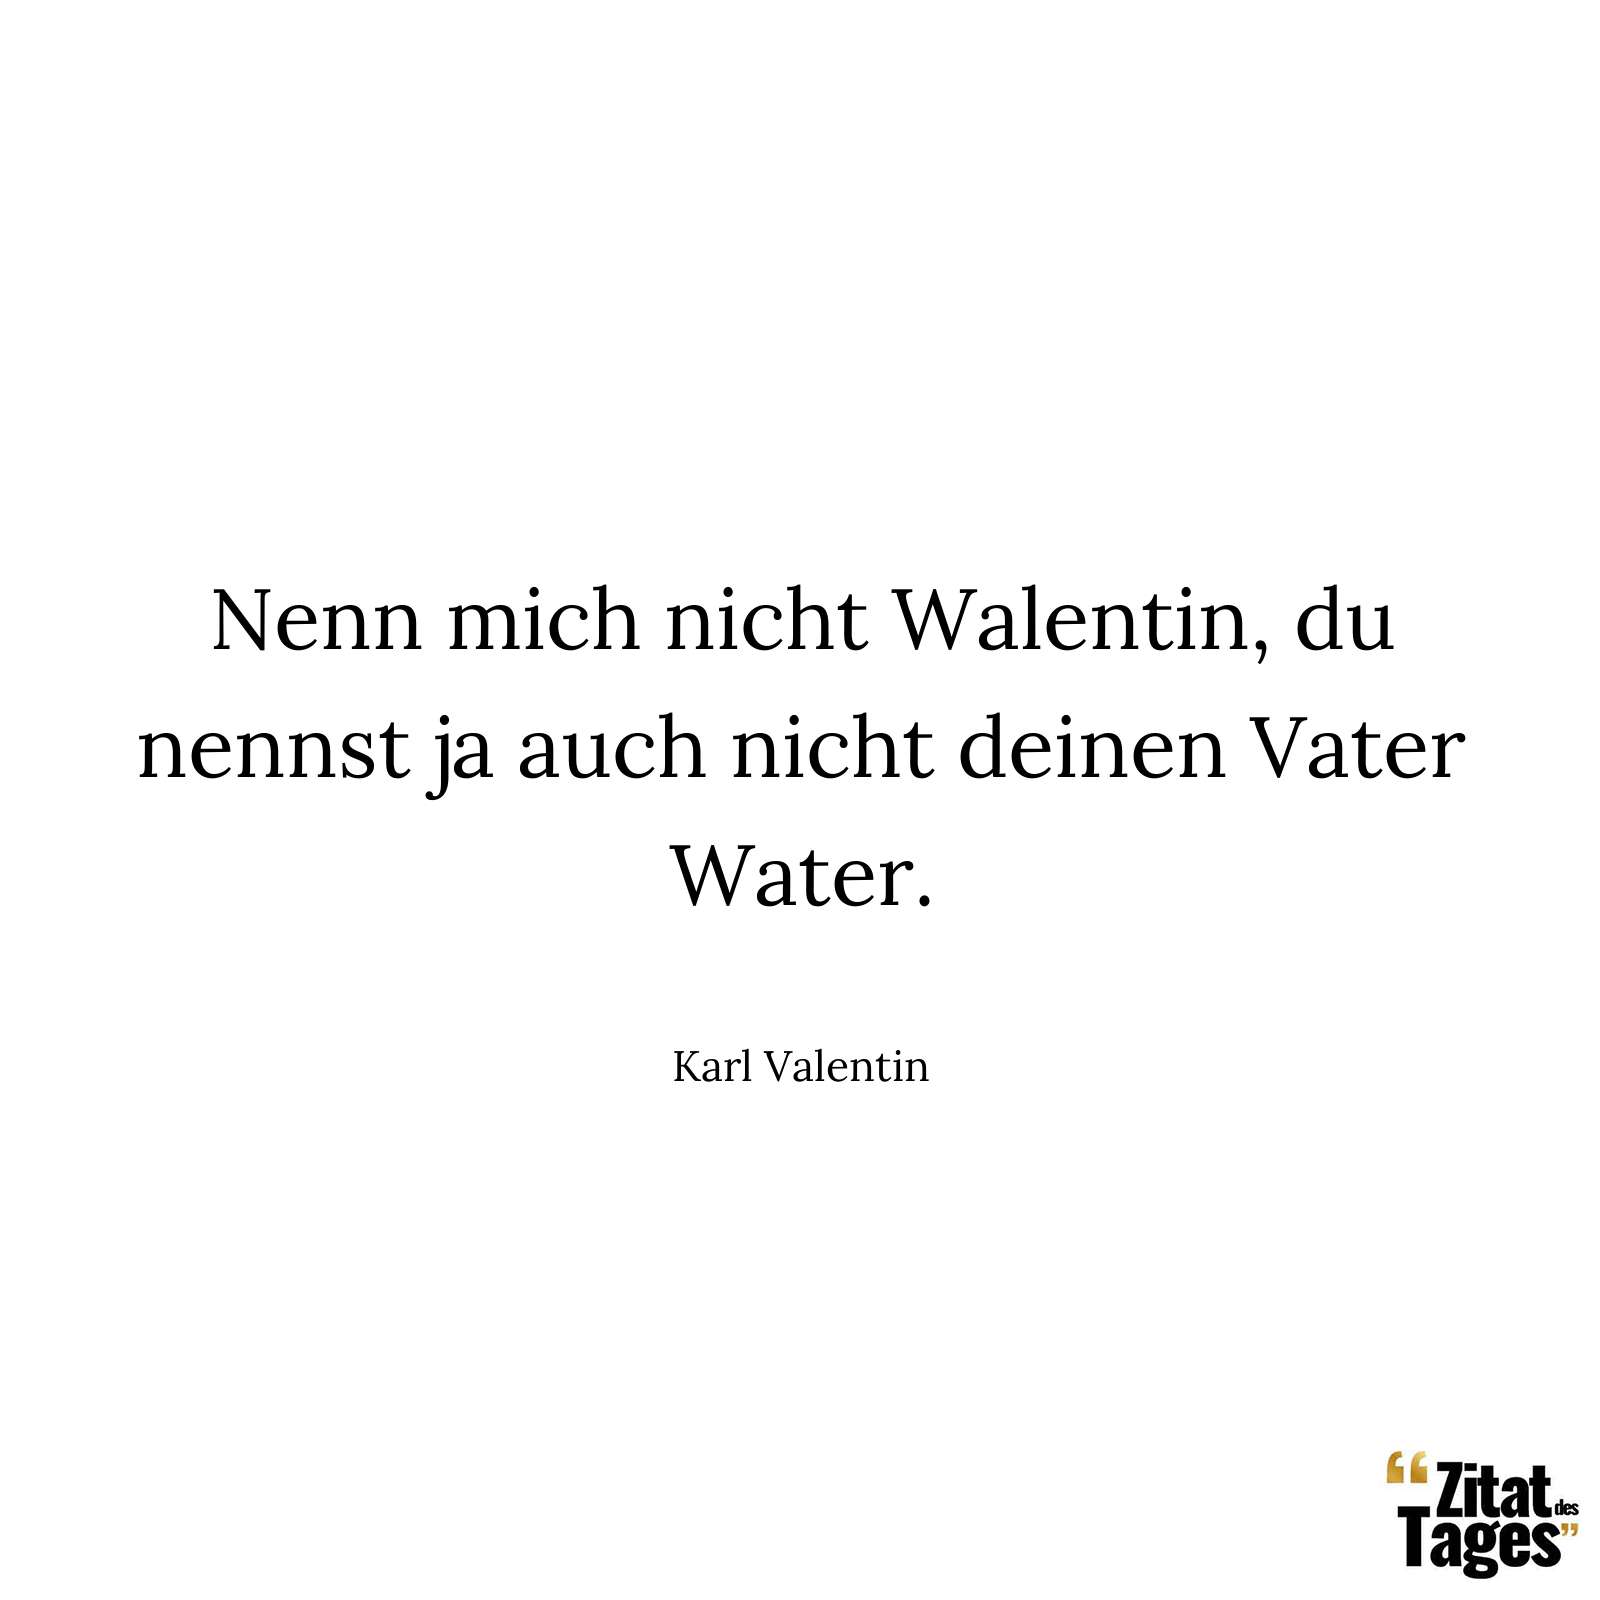 Nenn mich nicht Walentin, du nennst ja auch nicht deinen Vater Water. - Karl Valentin